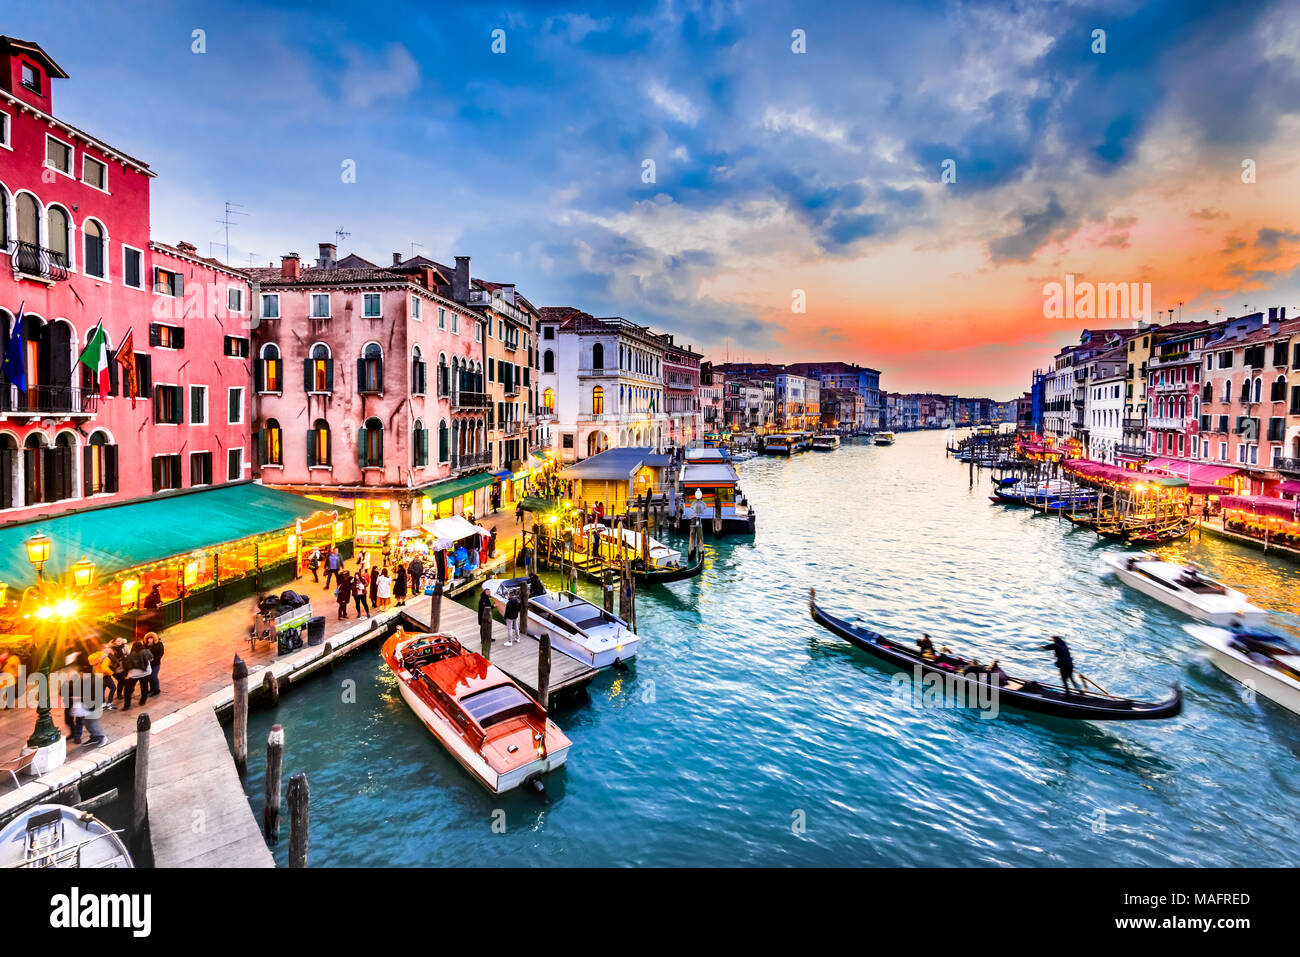 Venite, Italie - l'image de nuit avec Grand Canal, le plus vieux pont de Rialto, Venise. Banque D'Images